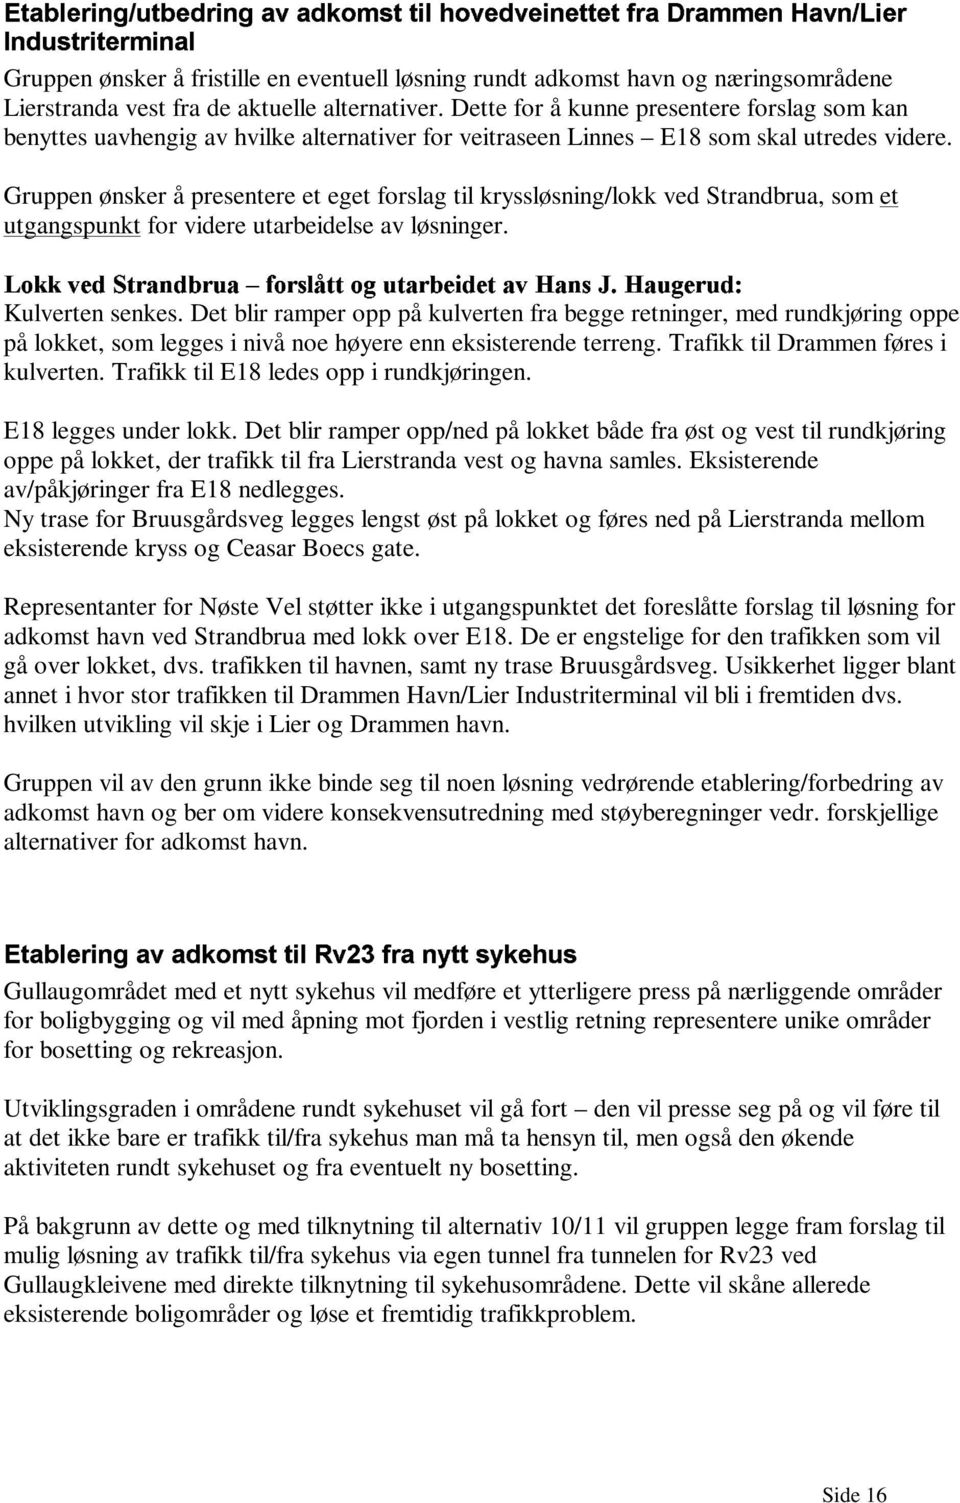 Gruppen ønsker å presentere et eget forslag til kryssløsning/lokk ved Strandbrua, som et utgangspunkt for videre utarbeidelse av løsninger. <>kk + LM8;:VŽjHP CIK?